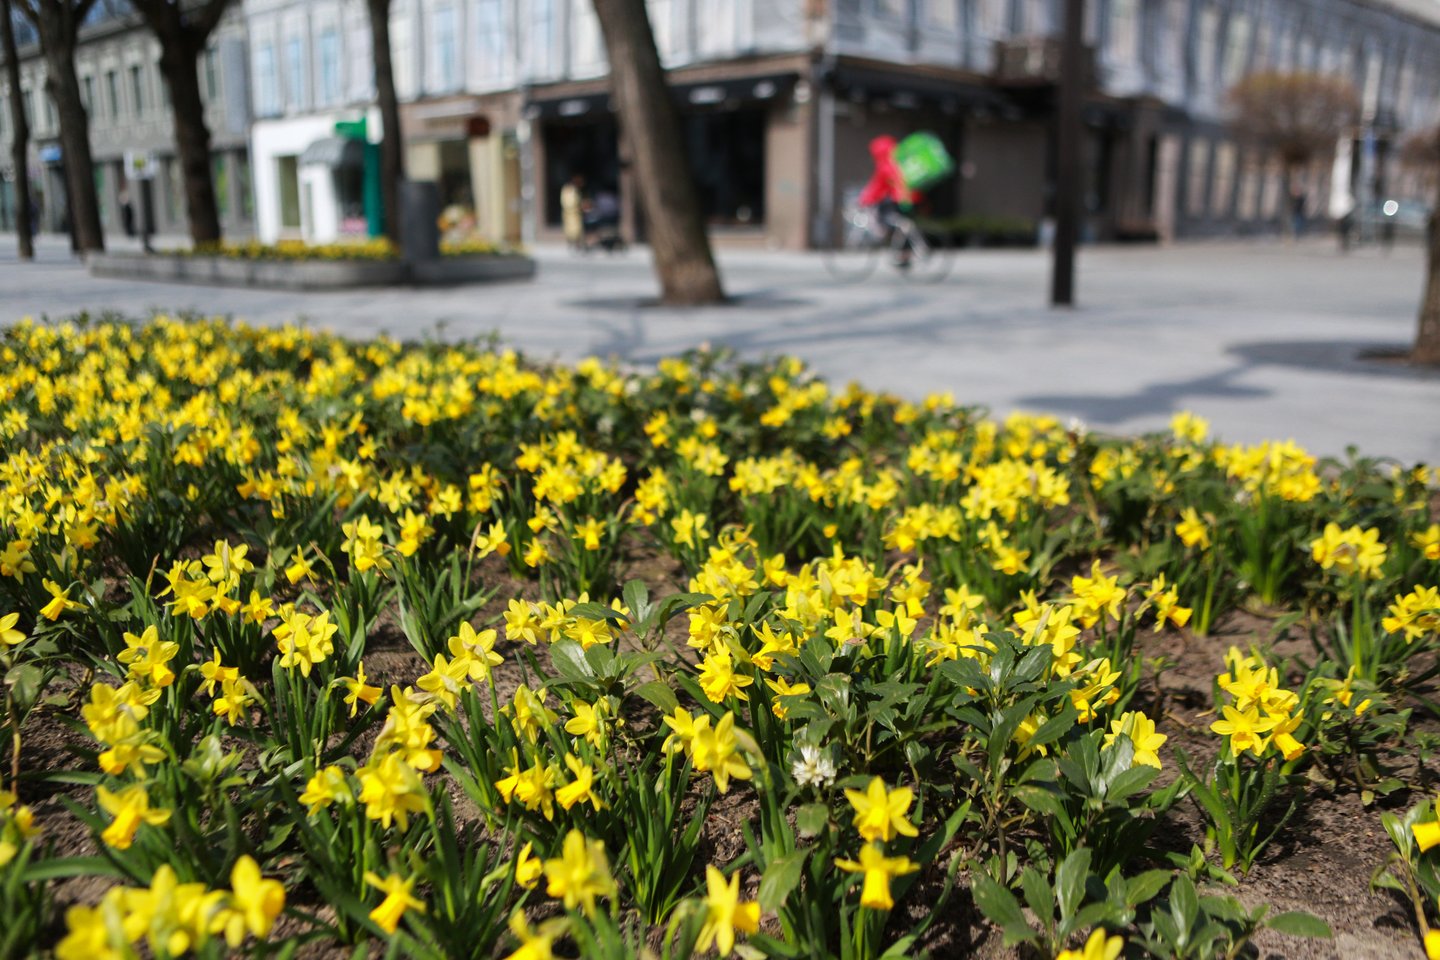 Laisvės alėjoje jau ketvirtą pavasarį sužydintys narcizai džiugina kauniečius ir miesto svečius savo geltona spalva.<br>G.Bitvinsko nuotr.